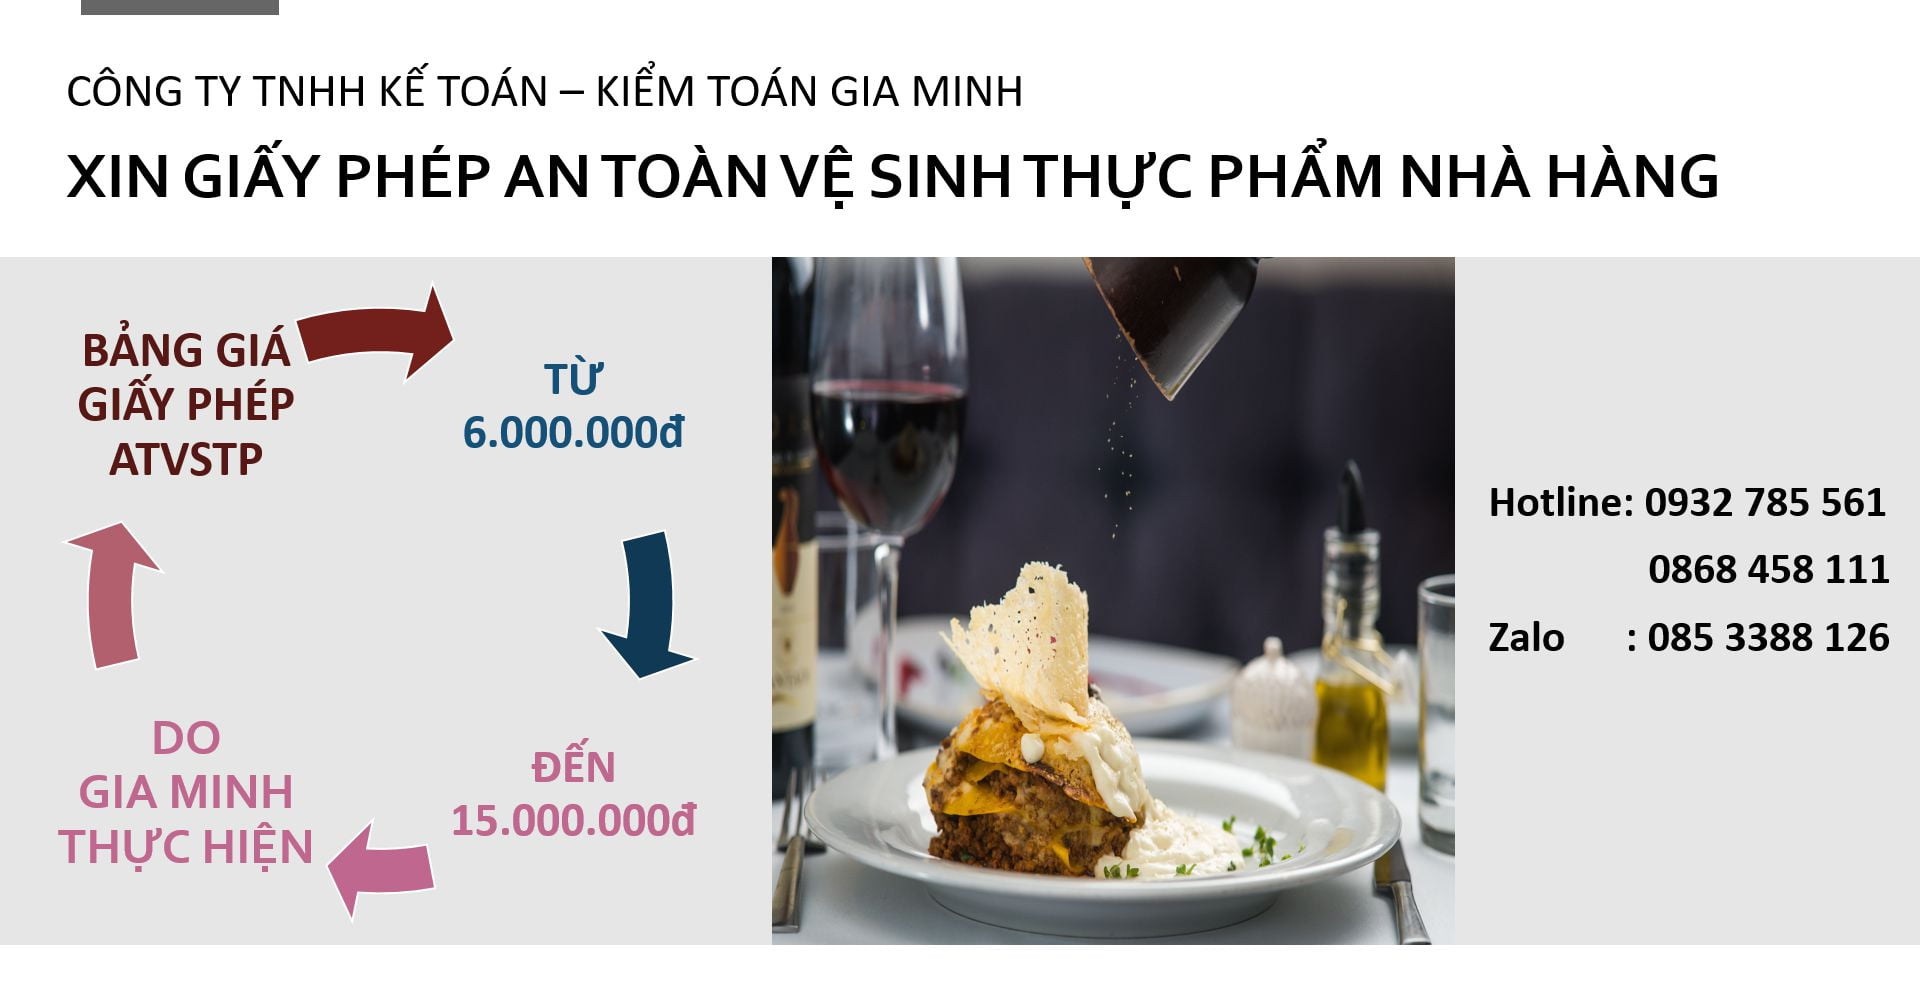 Xin giấy phép vệ sinh an toàn thực phẩm nhà hàng tại Huyện Phong Điền - Cần Thơ